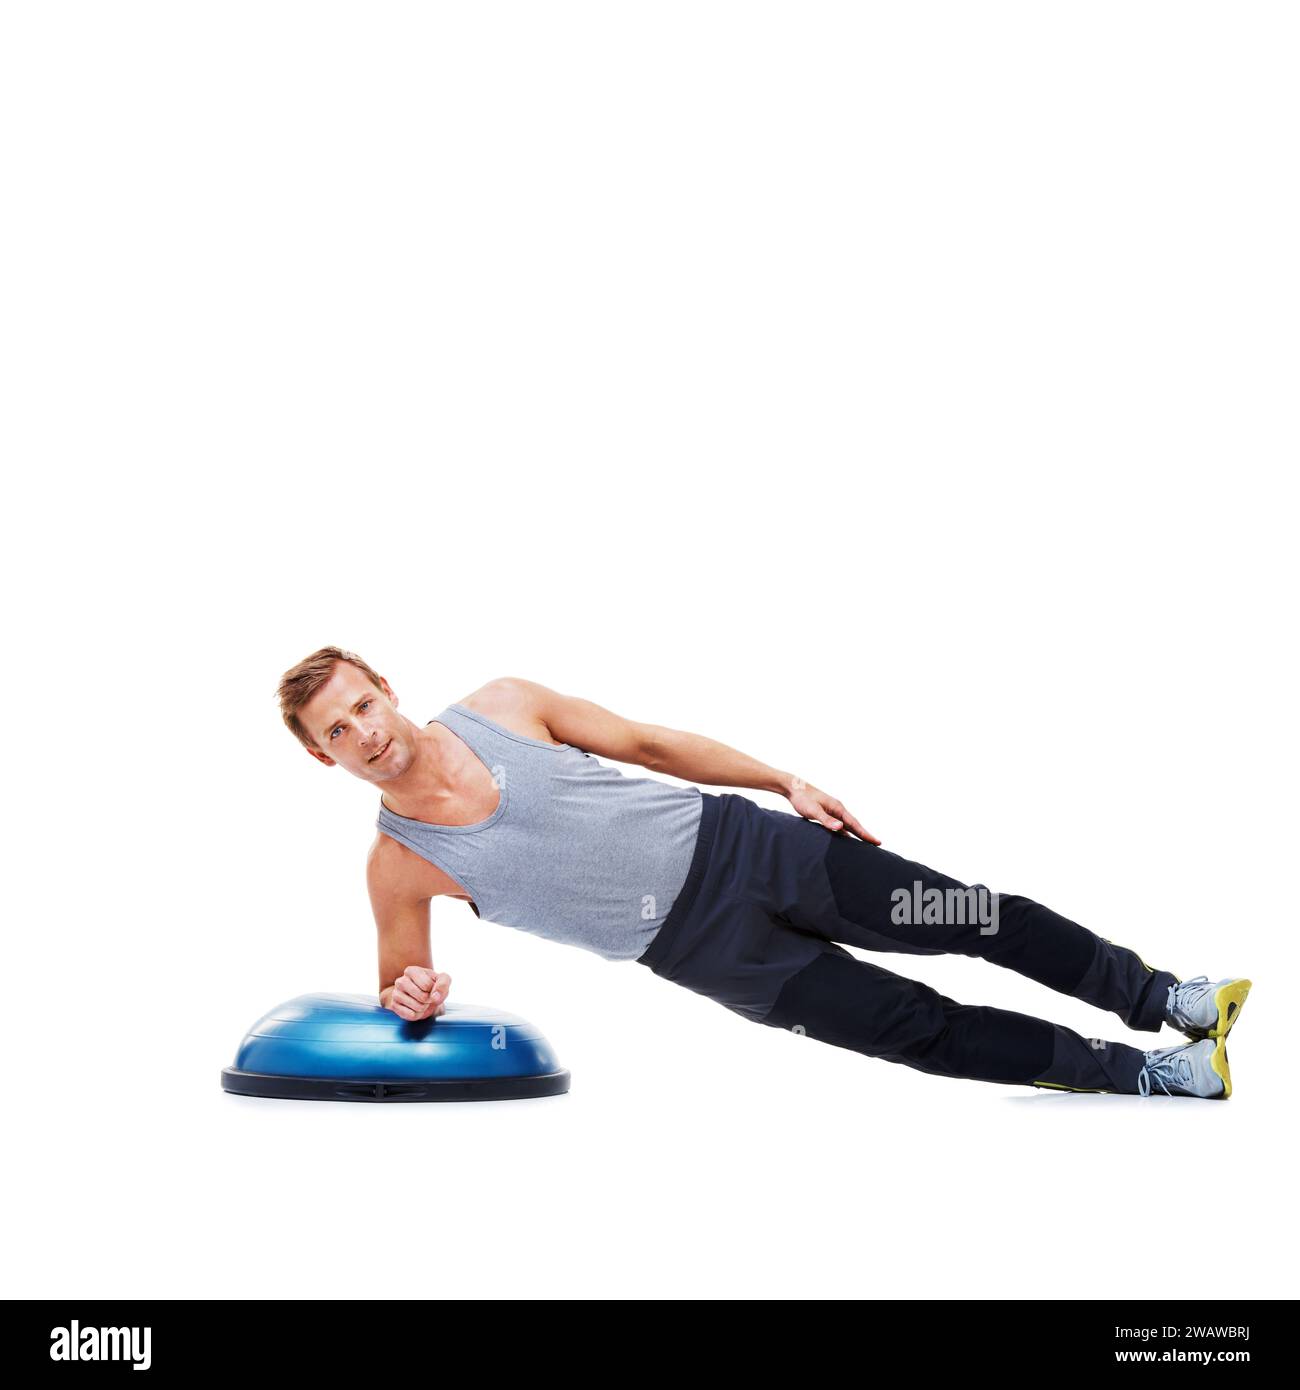 Mann, Fitness und Balance auf bosu Ball für Core Training, Muskel und Workout isoliert auf weißem Hintergrund. Trainingsgeräte, Kraft und Ausdauer Stockfoto